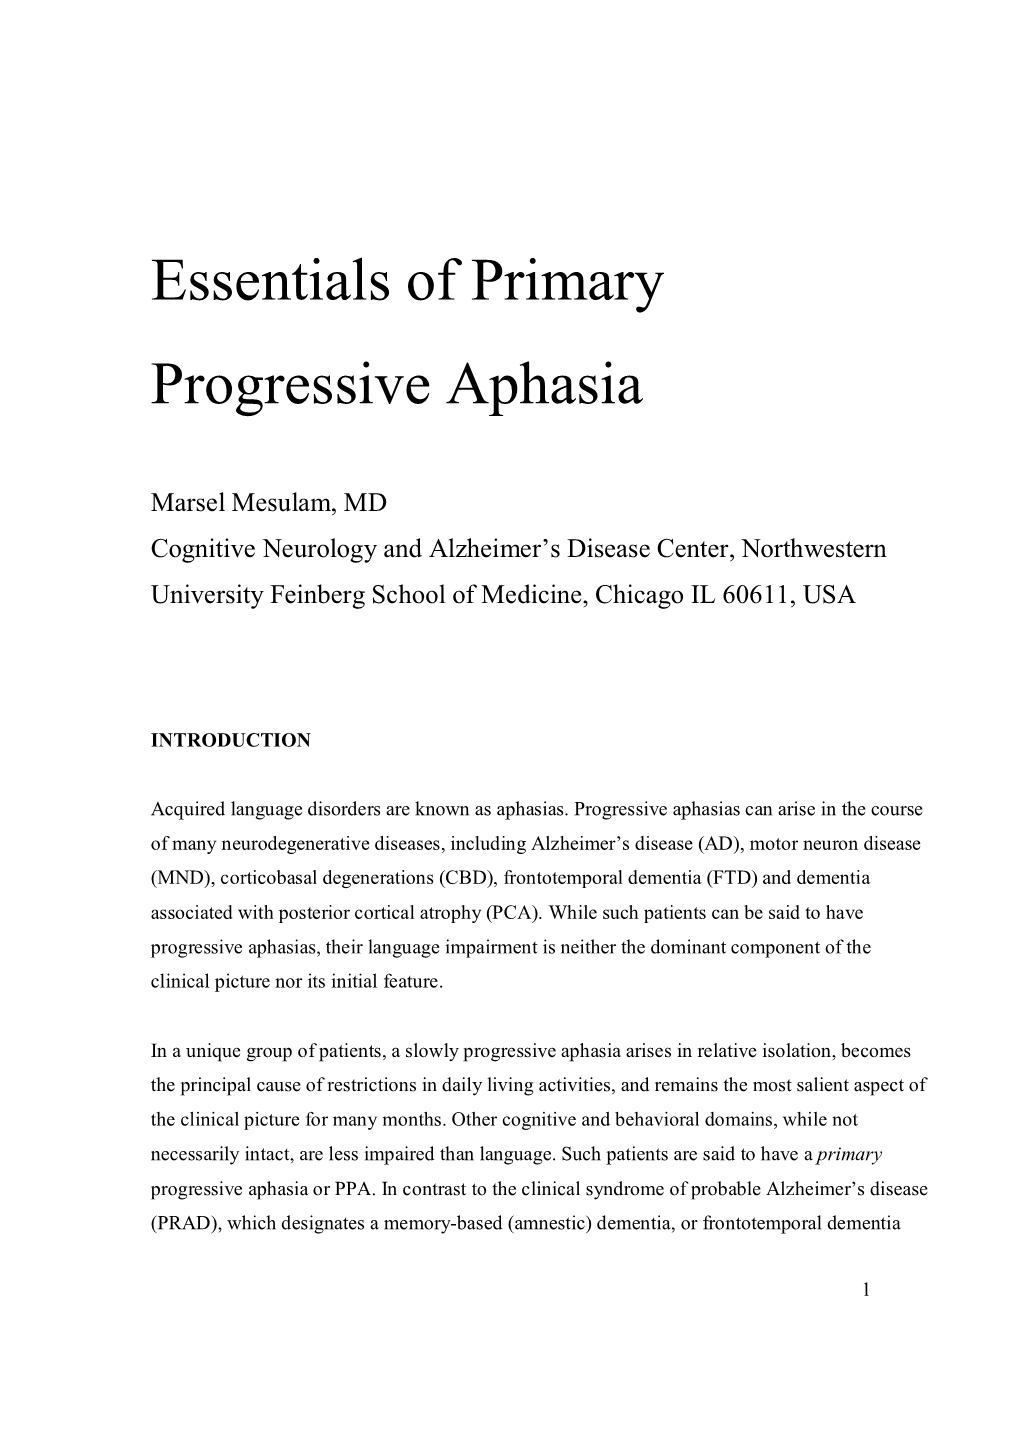 Essentials of Primary Progressive Aphasia